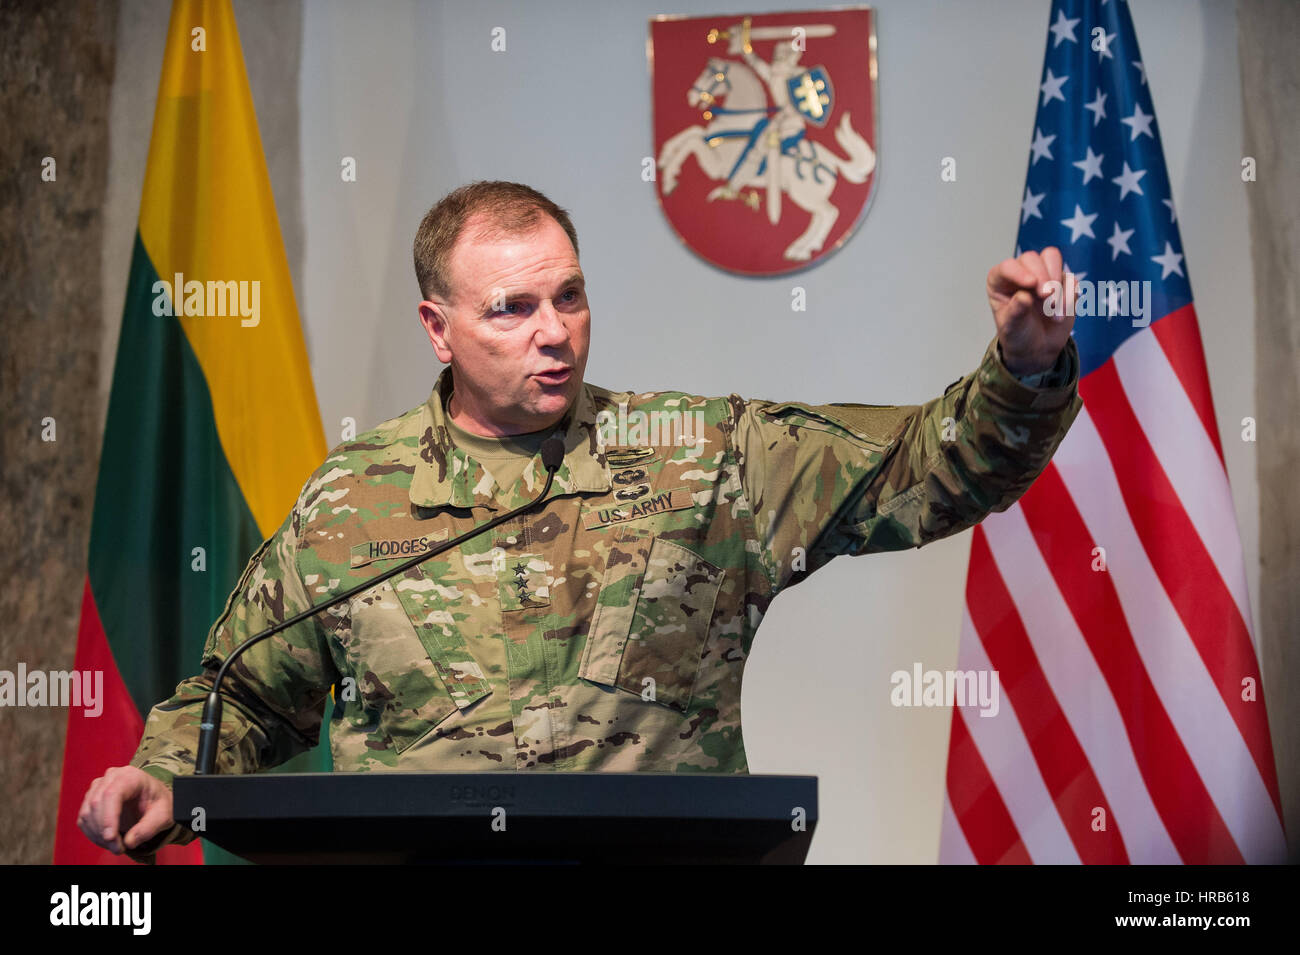 Guerre en Ukraine: Voici ce qui attend les Russes dans 4 mois, selon un officier Américain